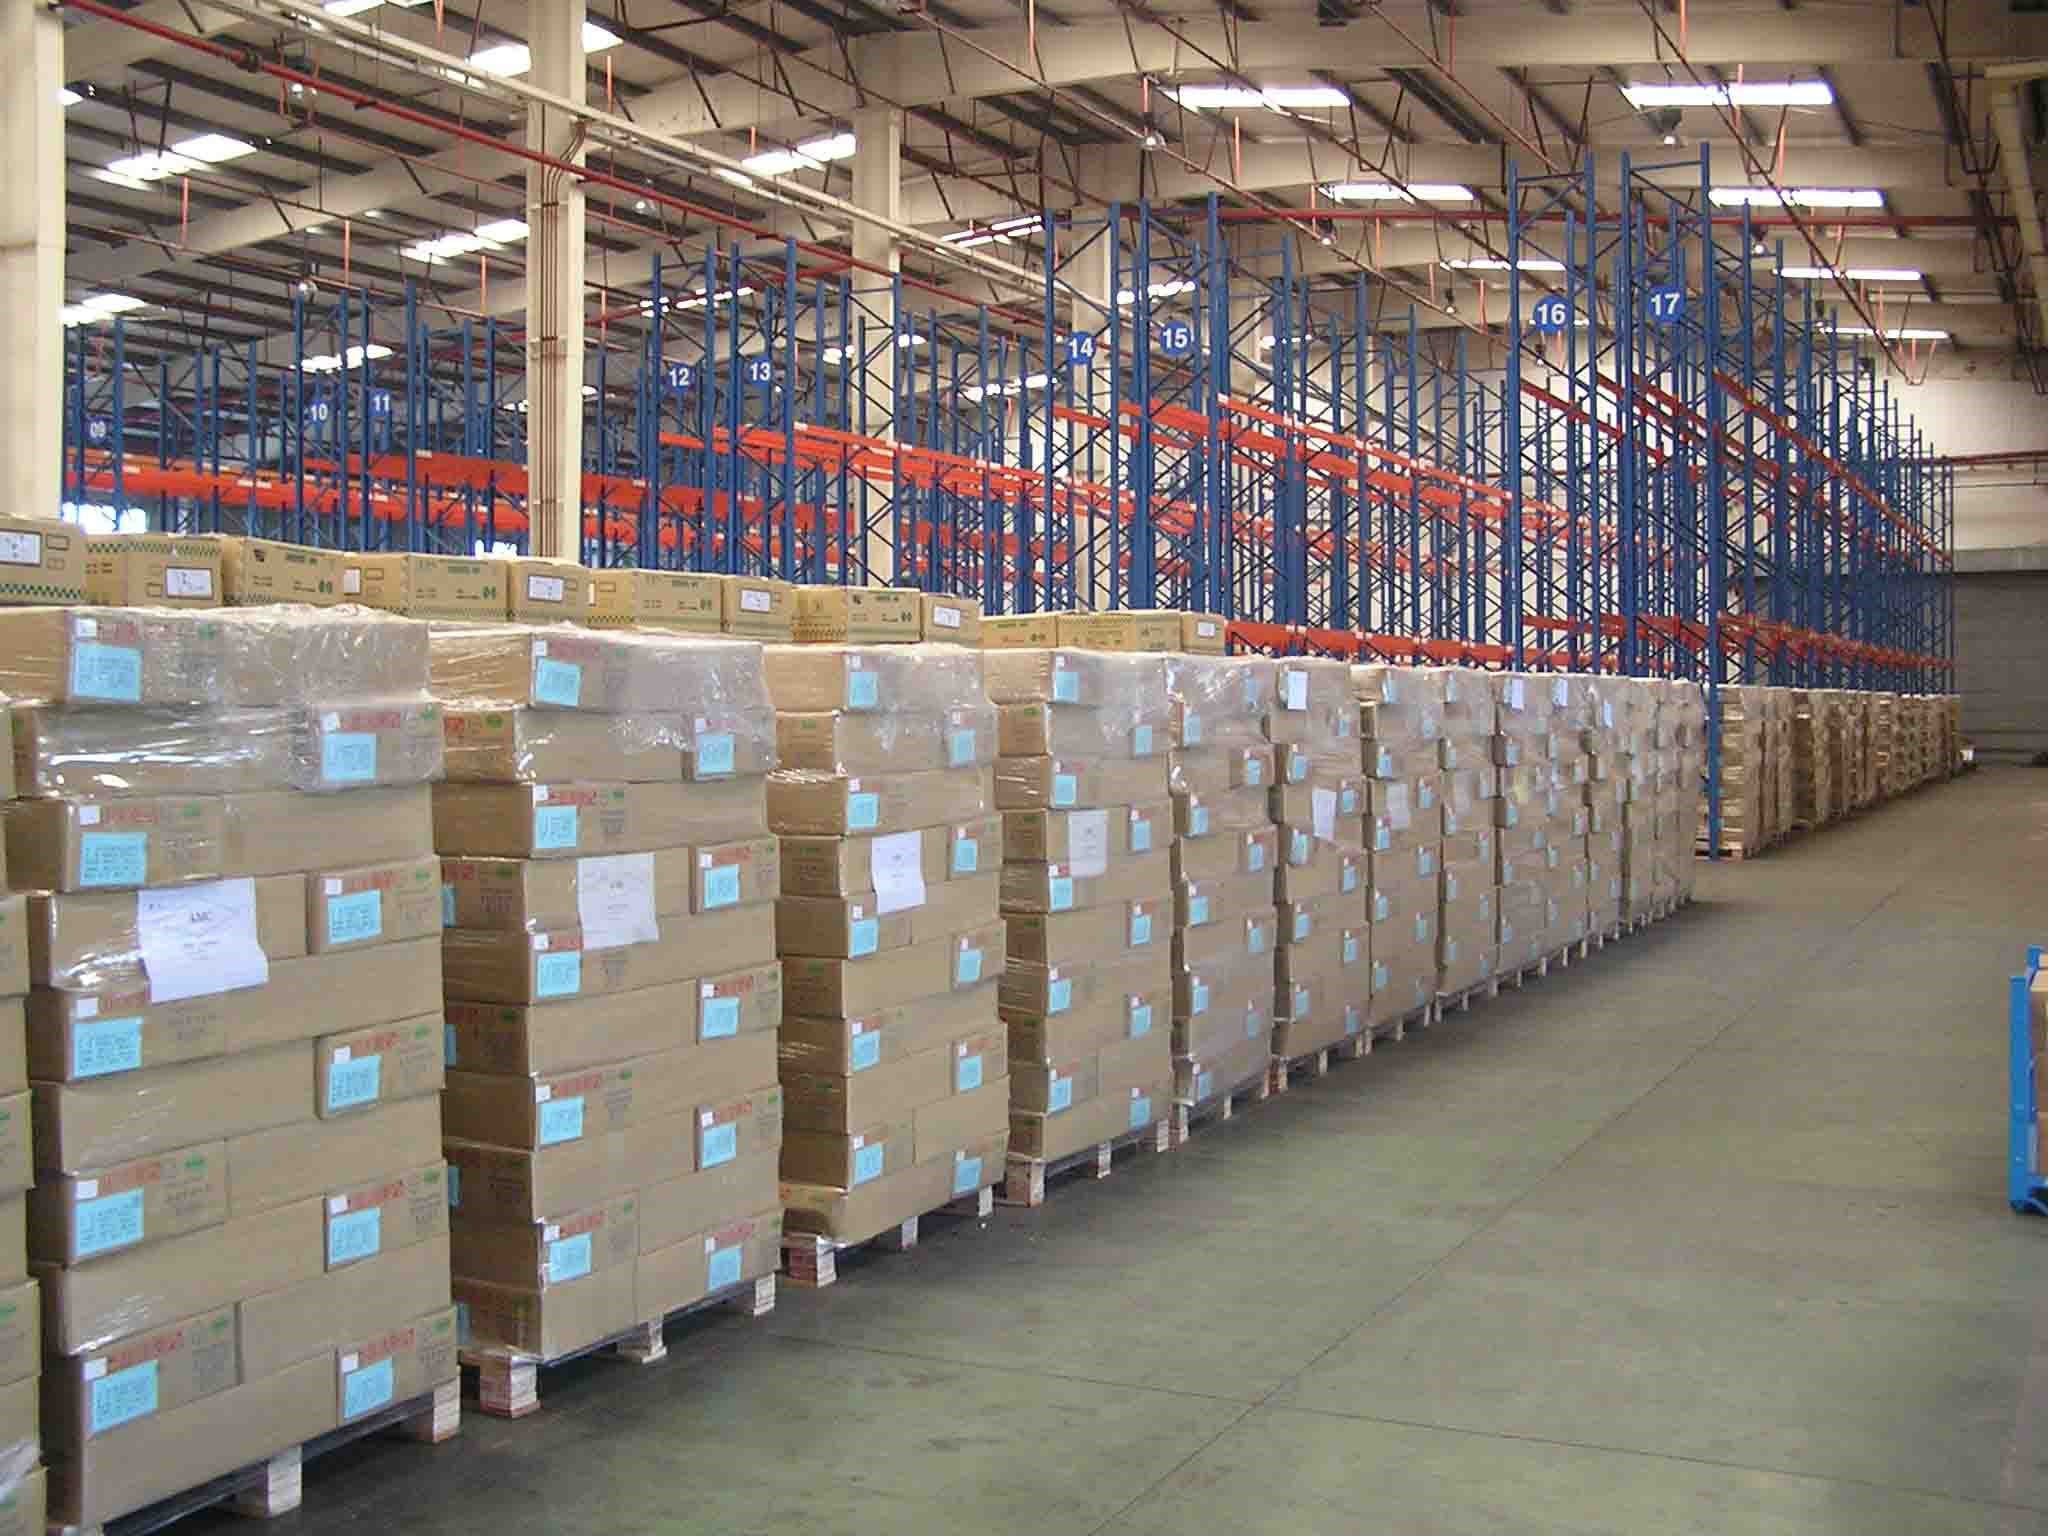 上海物流仓储设备需求增加 带动仓库租金上涨